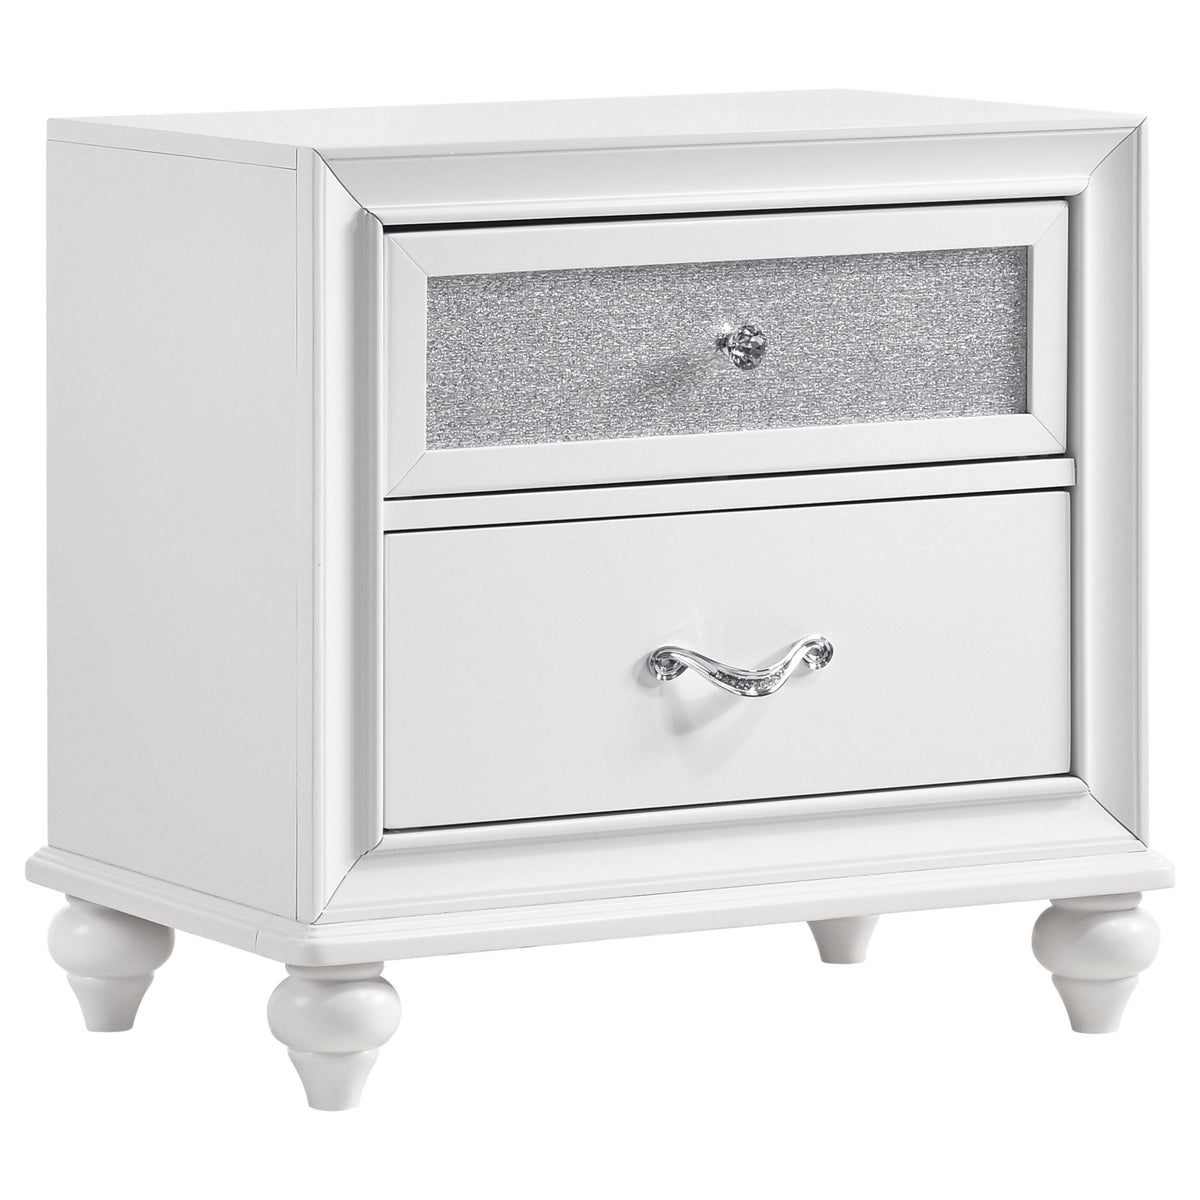 Barzini 2-drawer Nightstand White Barzini 2-drawer Nightstand White Half Price Furniture